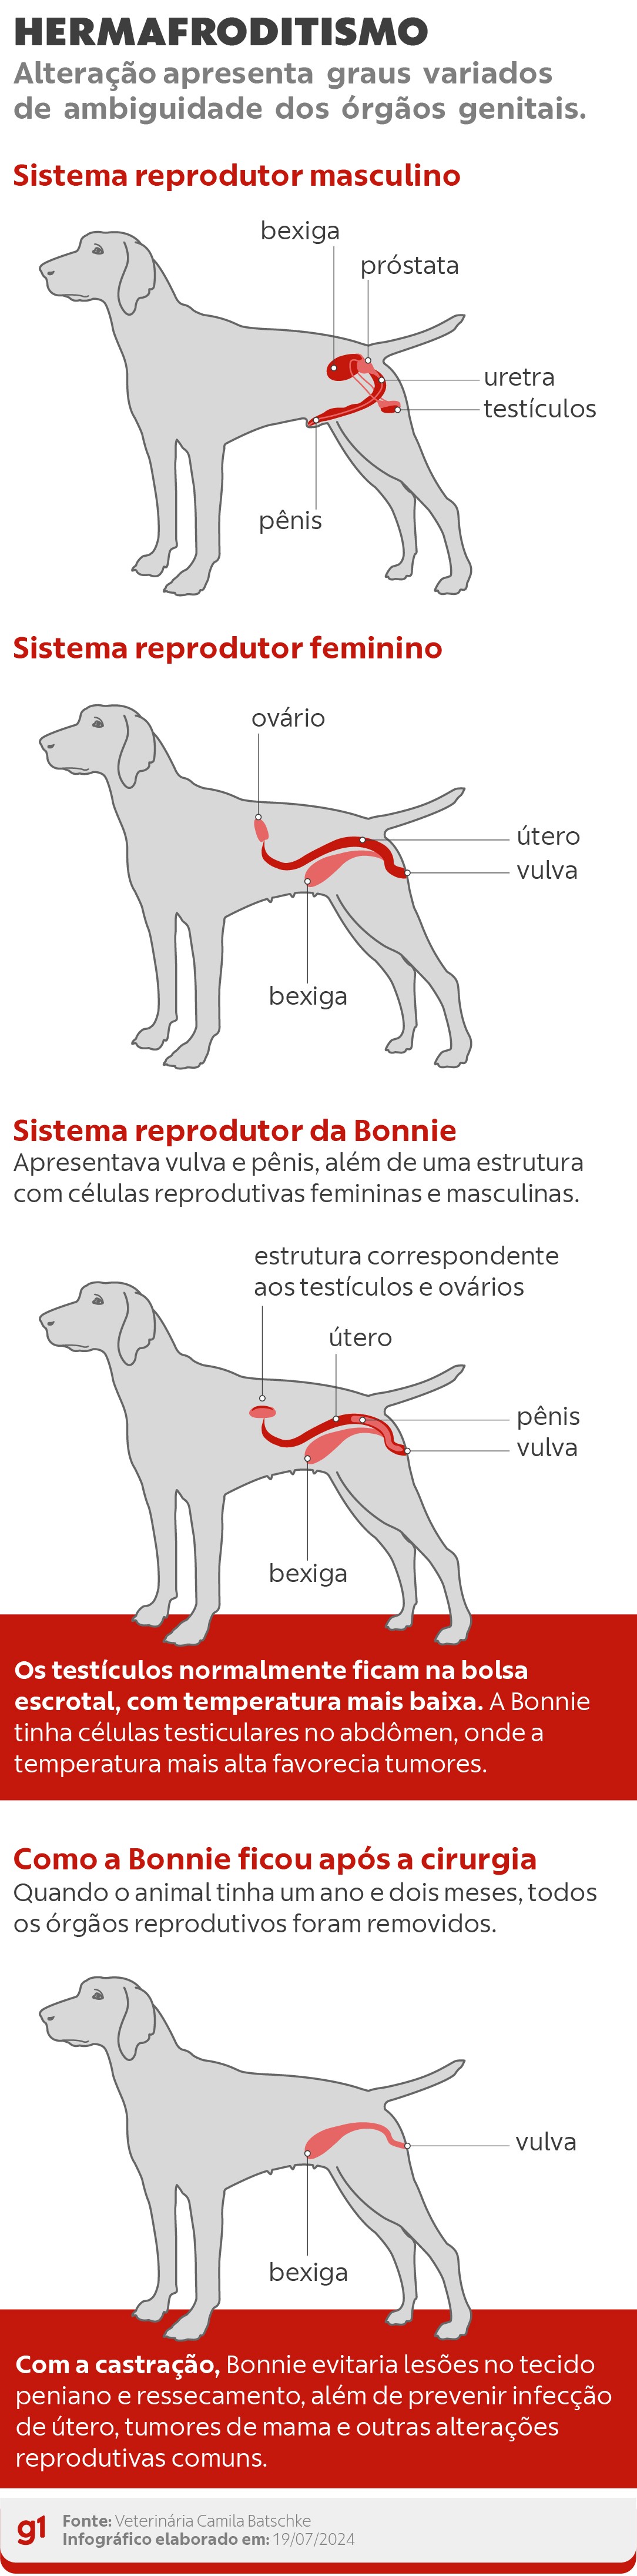 Cachorra com condição rara de hermafroditismo passa por cirurgia de castração em SC